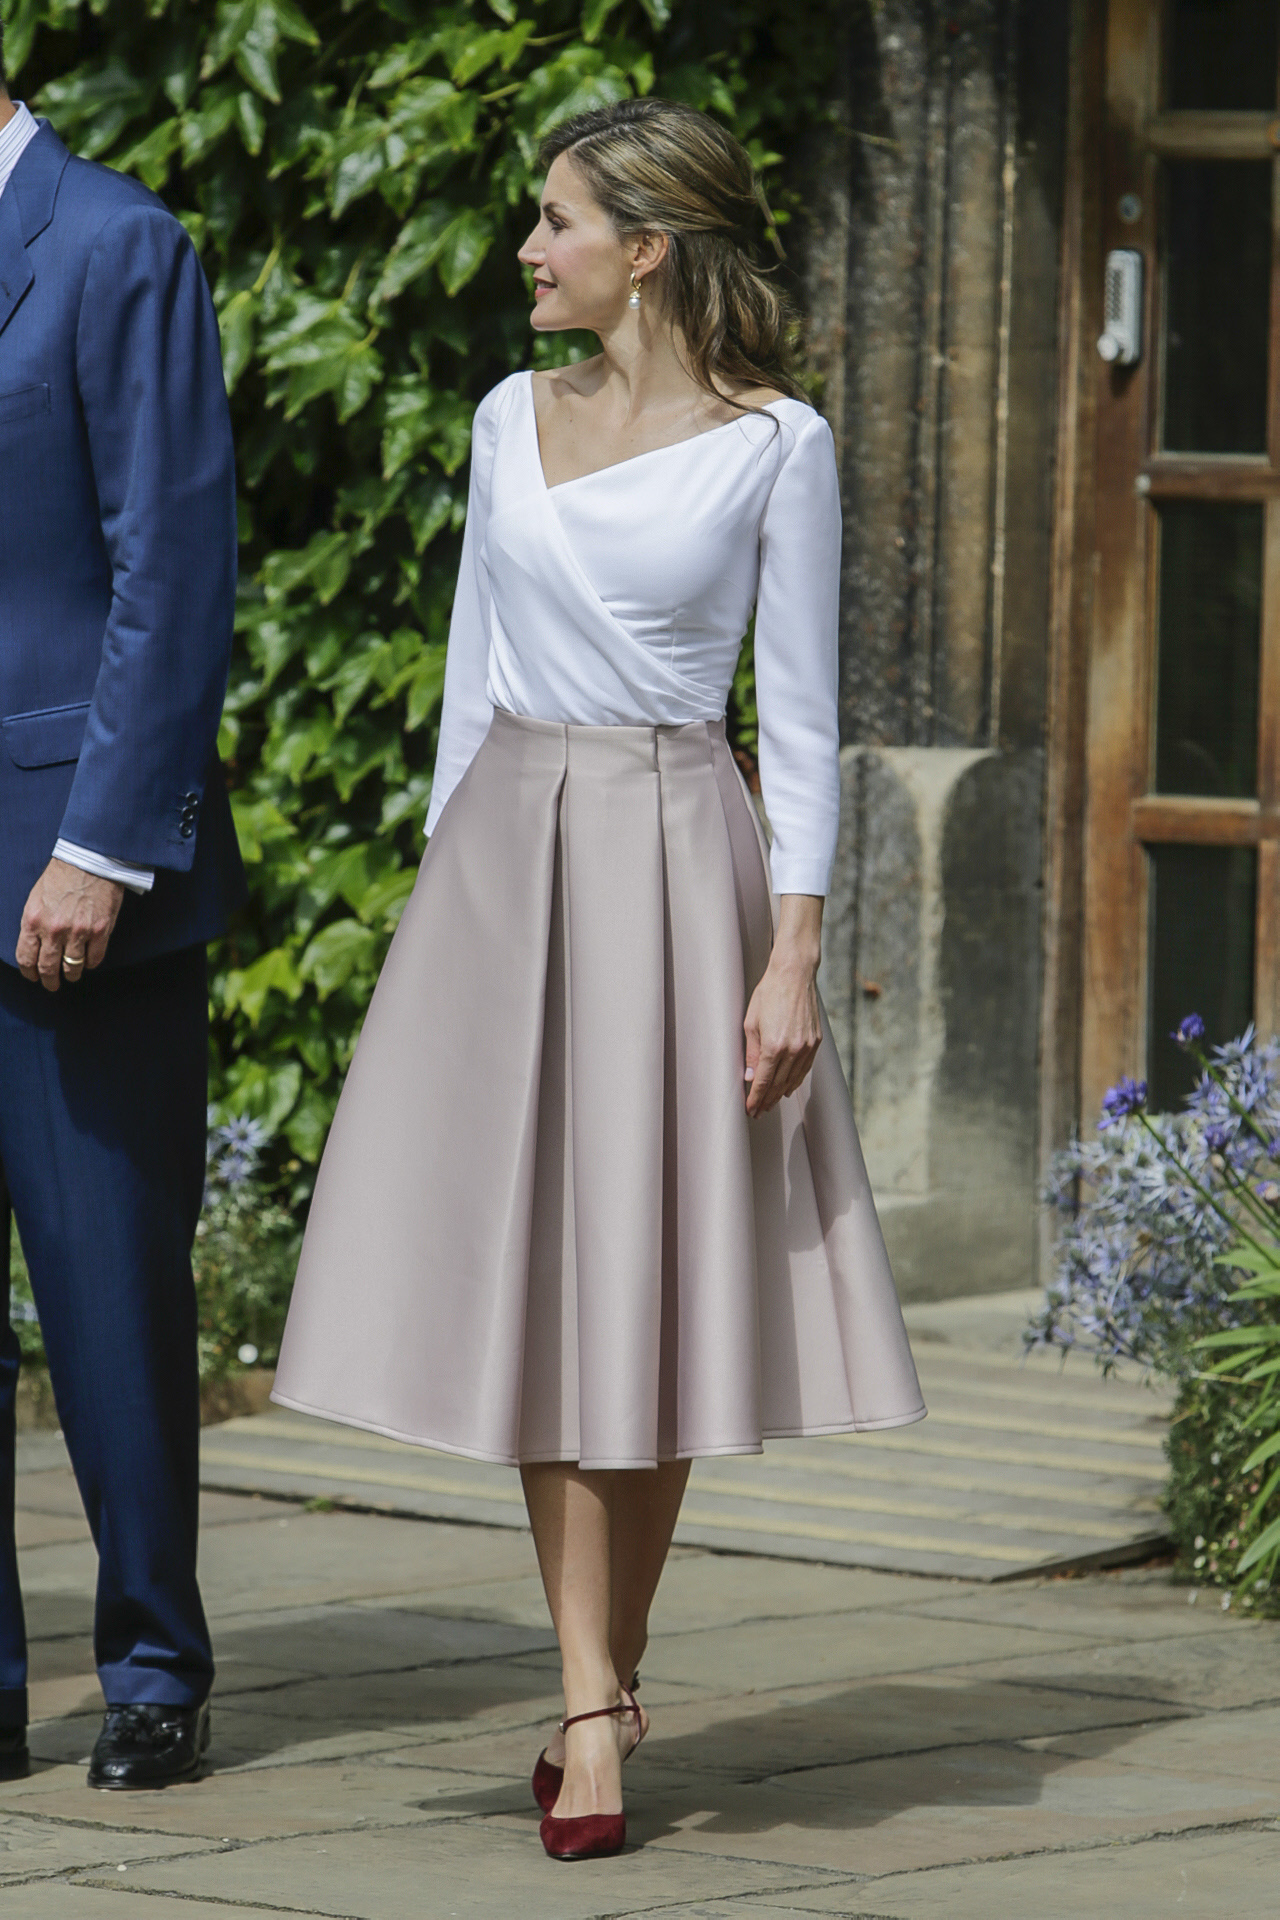 El look de la reina Letizia en Londres con top blanco y falda evasé.